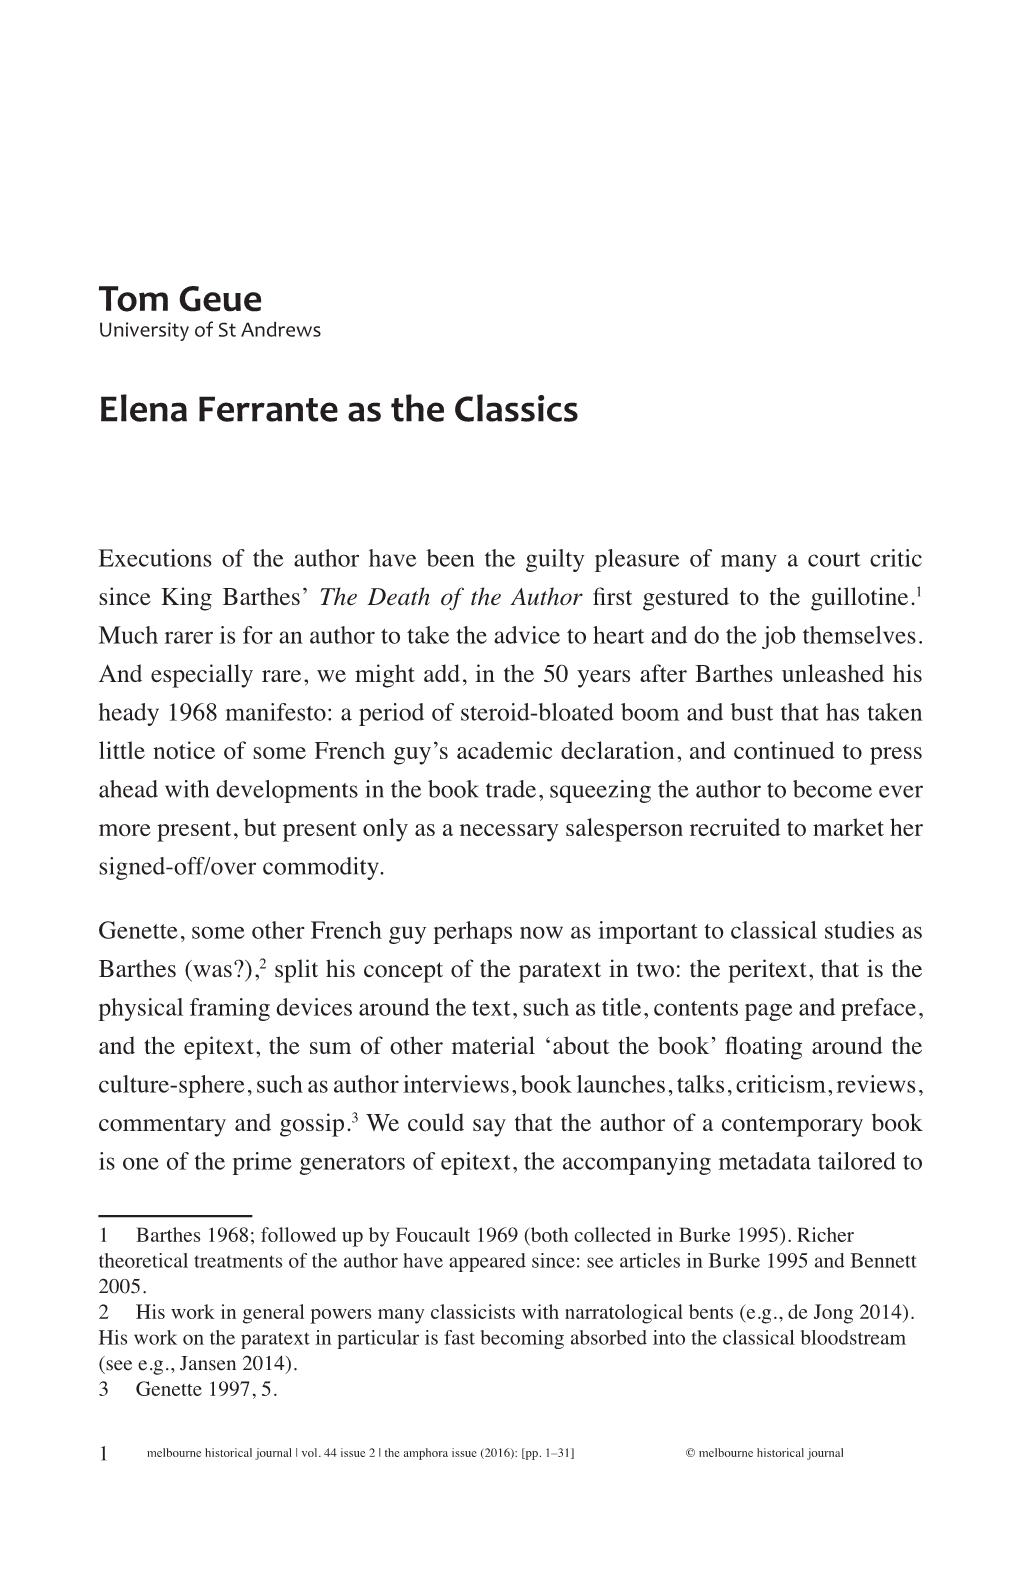 Tom Geue Elena Ferrante As the Classics